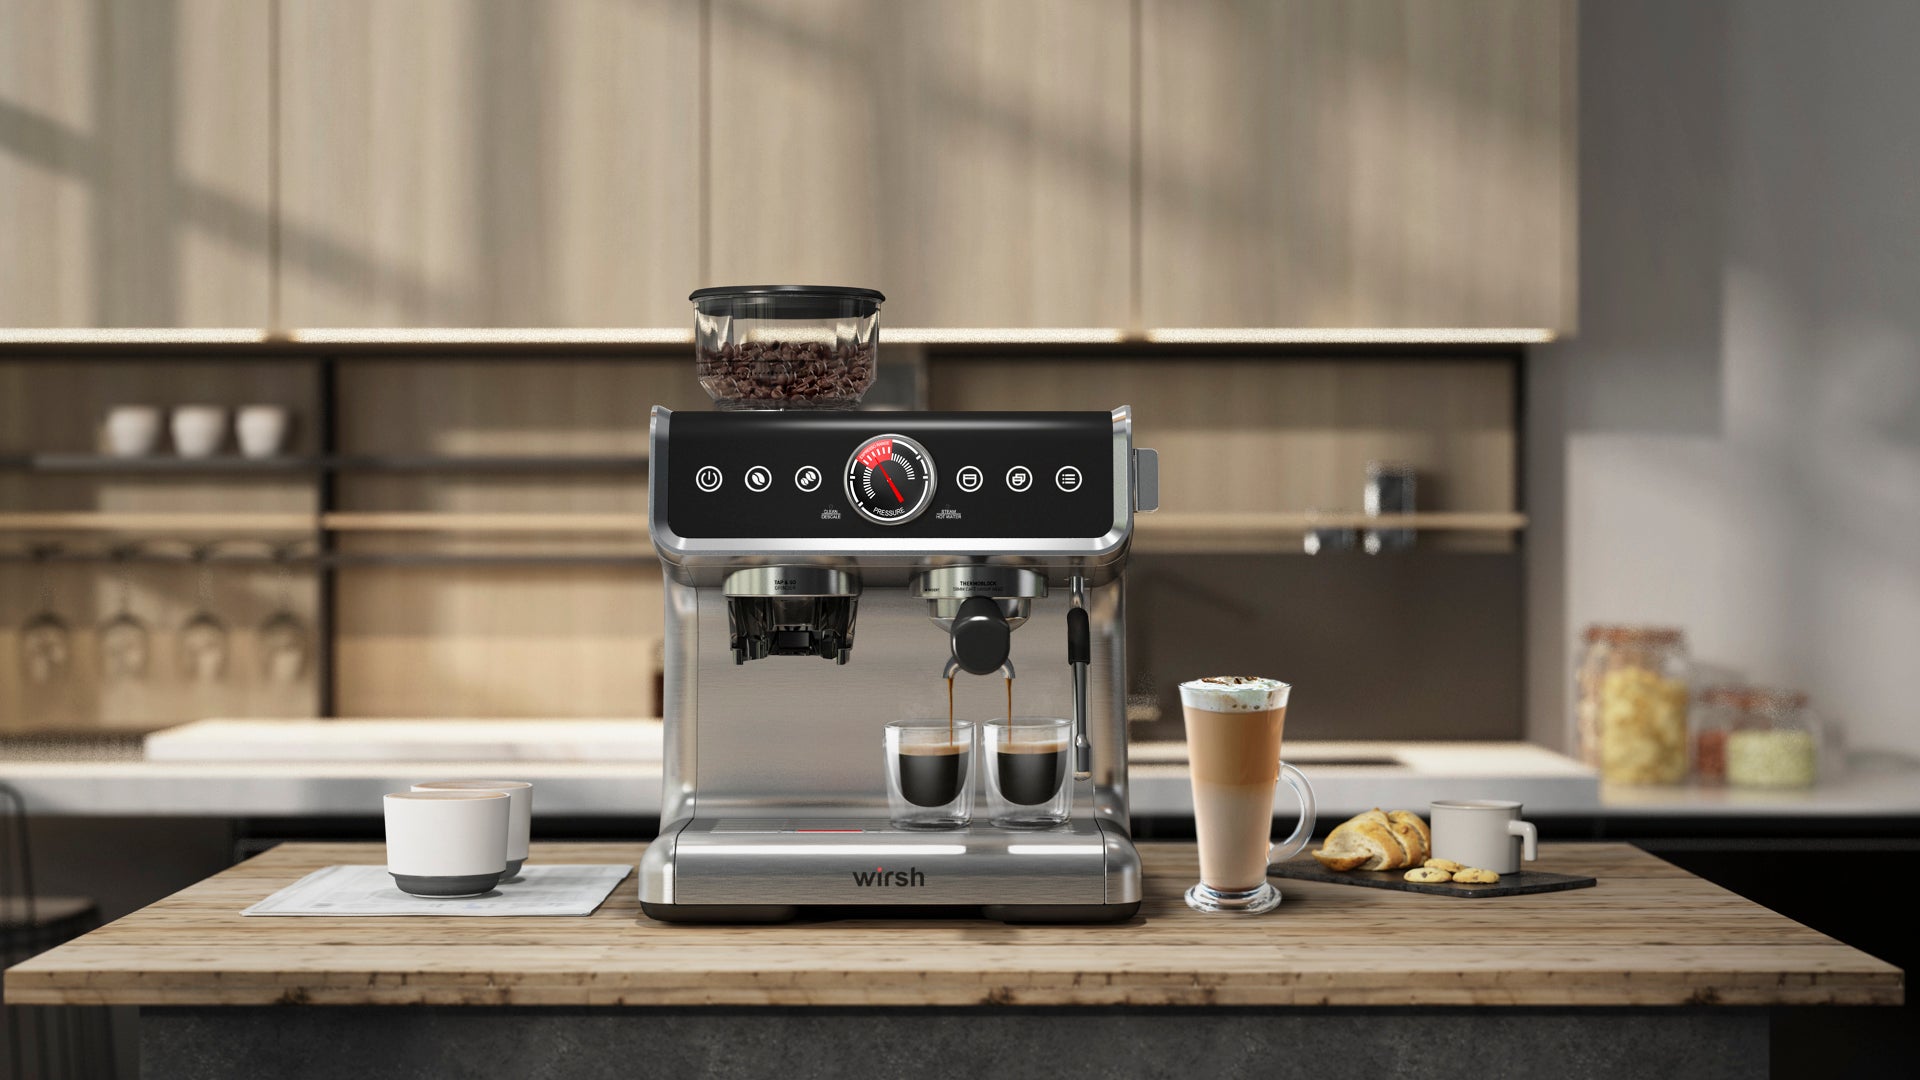 <img src="espresso machine.jpg" alt="wirsh 15 bar bean to cup espresso machine"/>